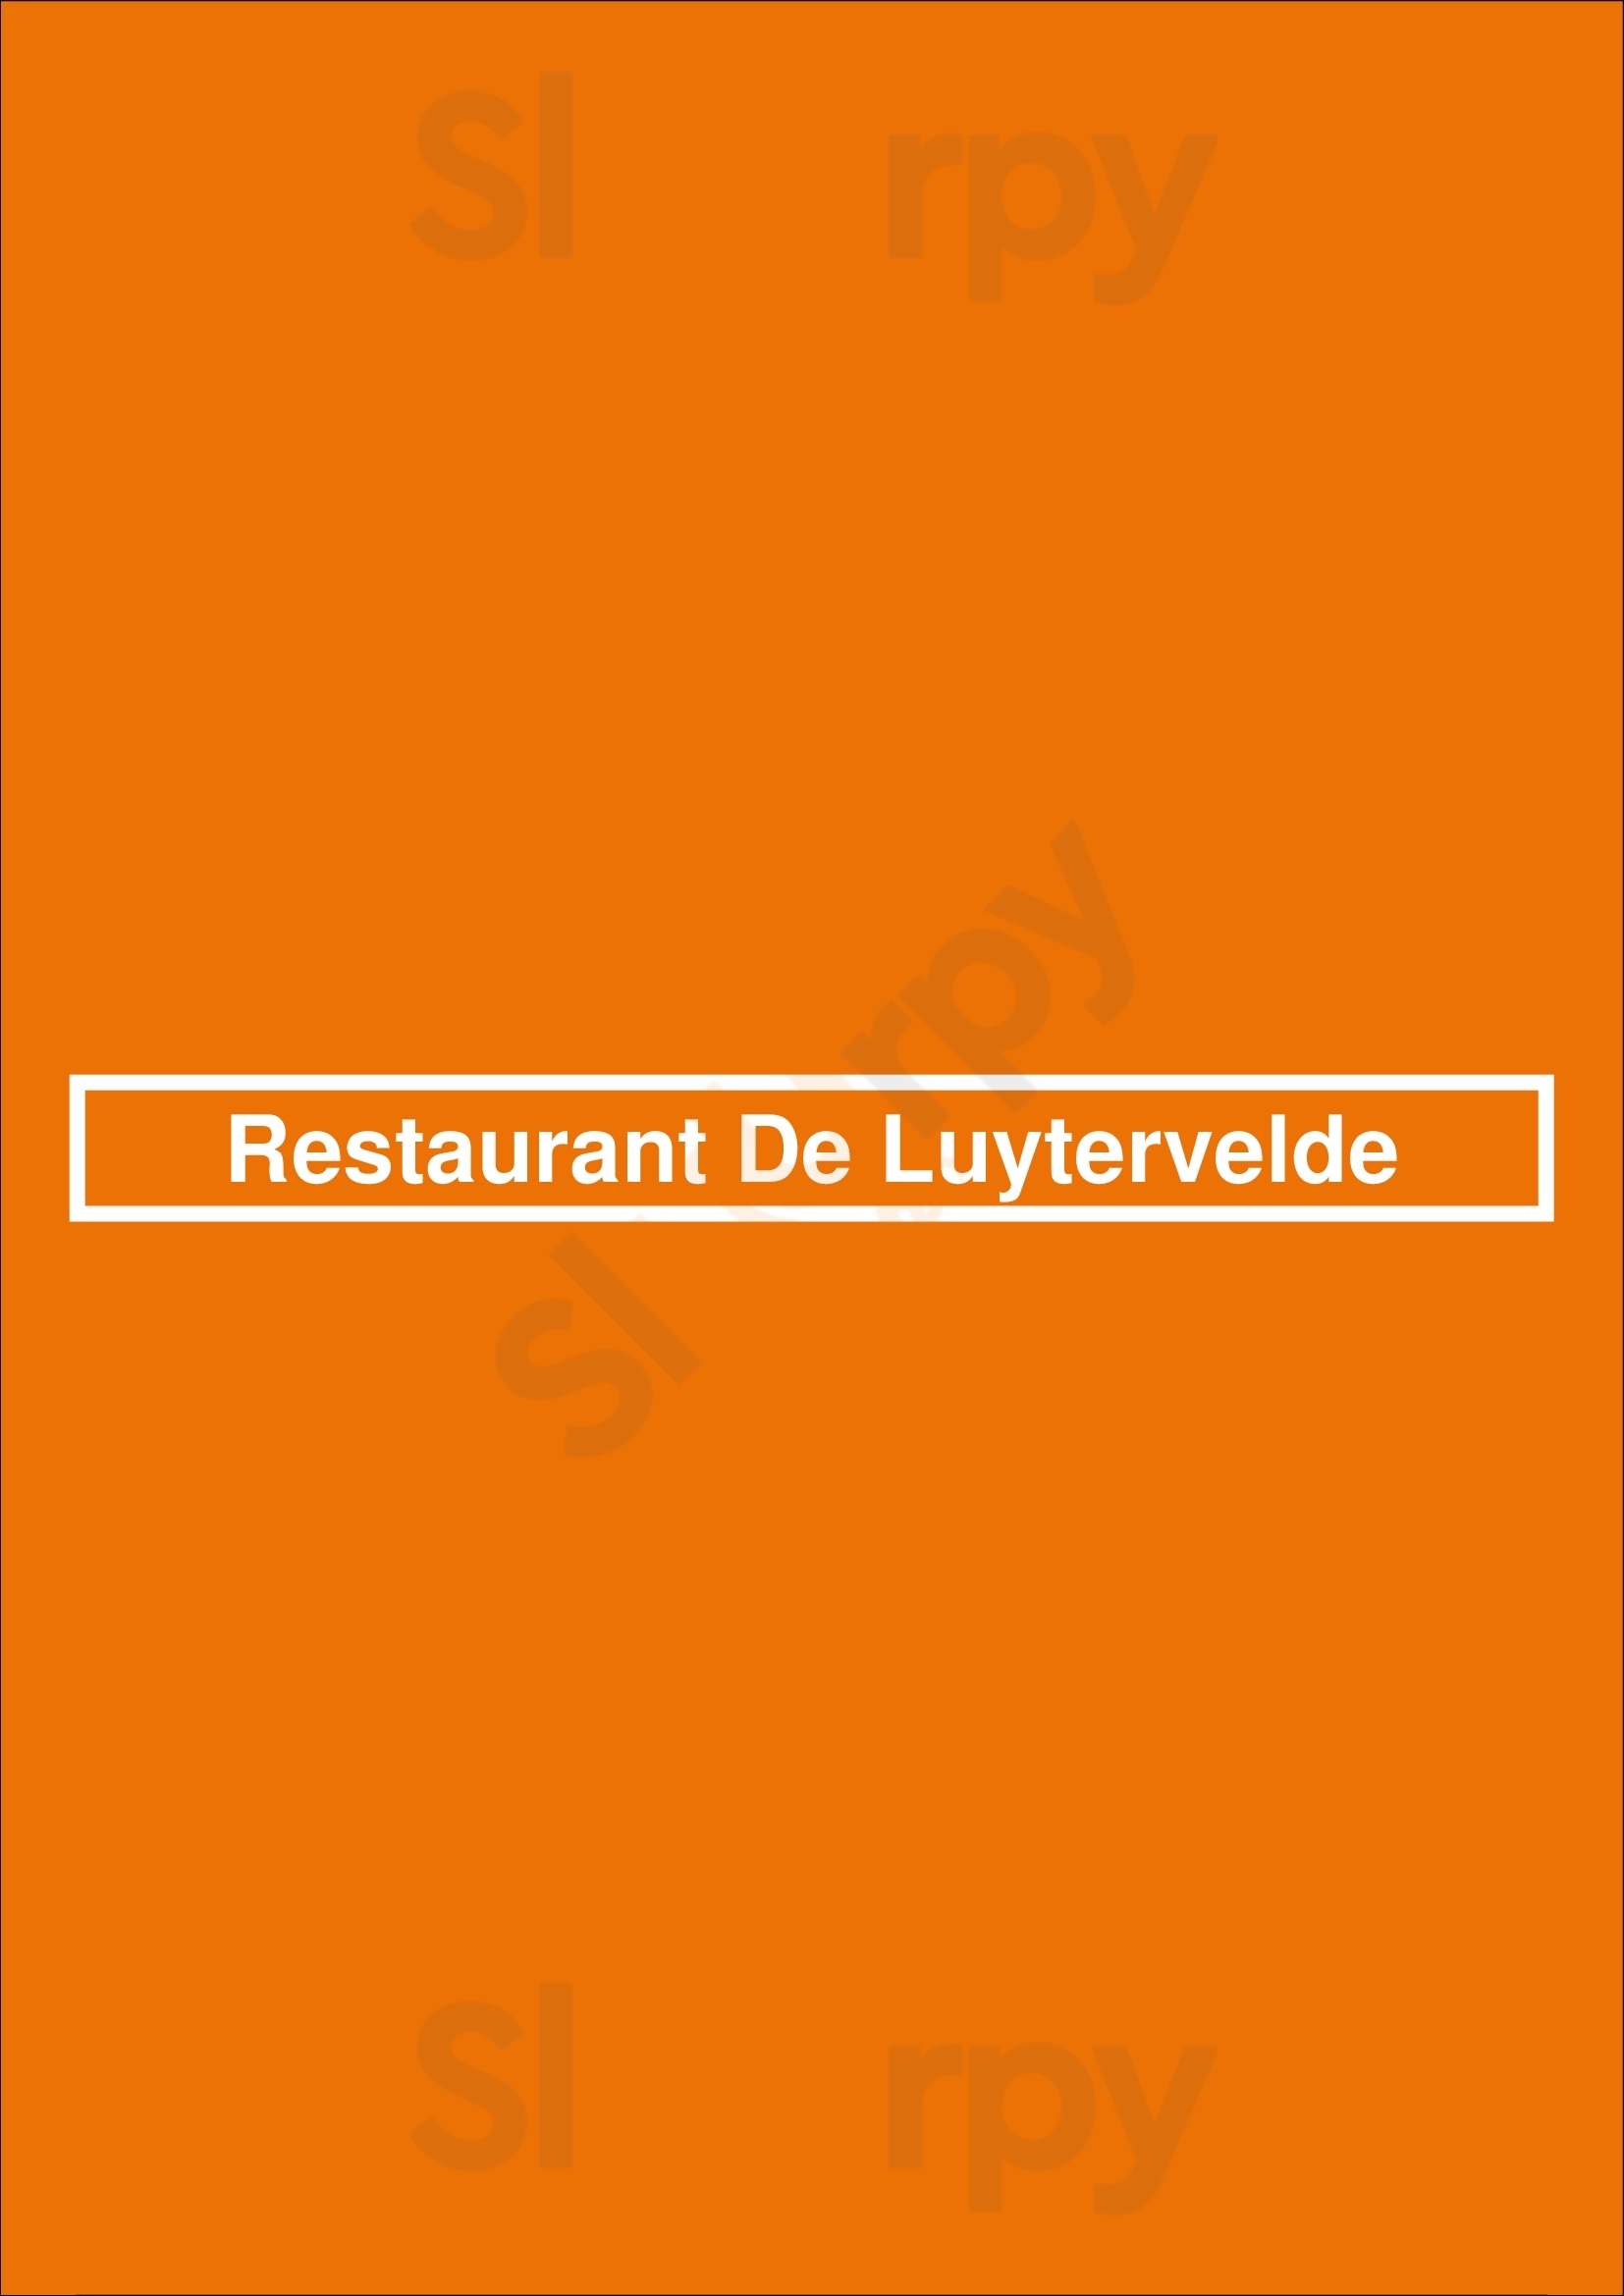 Restaurant De Luytervelde Eindhoven Menu - 1